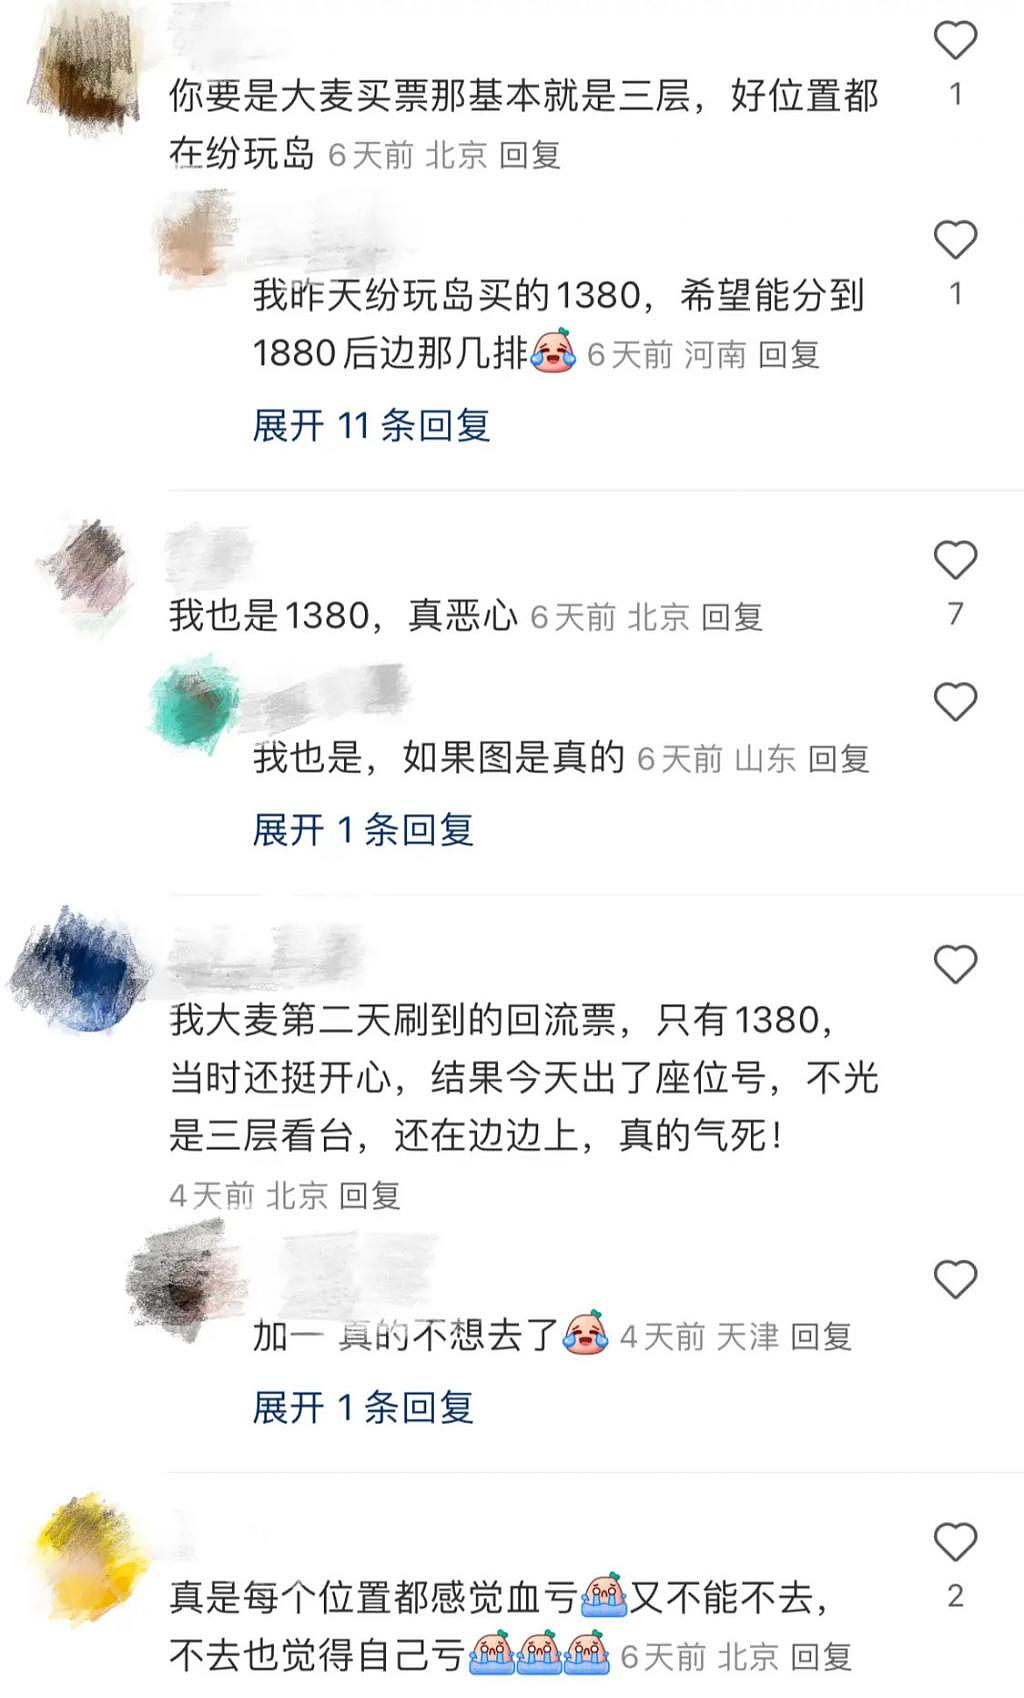 李宗盛北京演唱会遭网友吐槽 花了 1380 元 像“坐牢” - 3